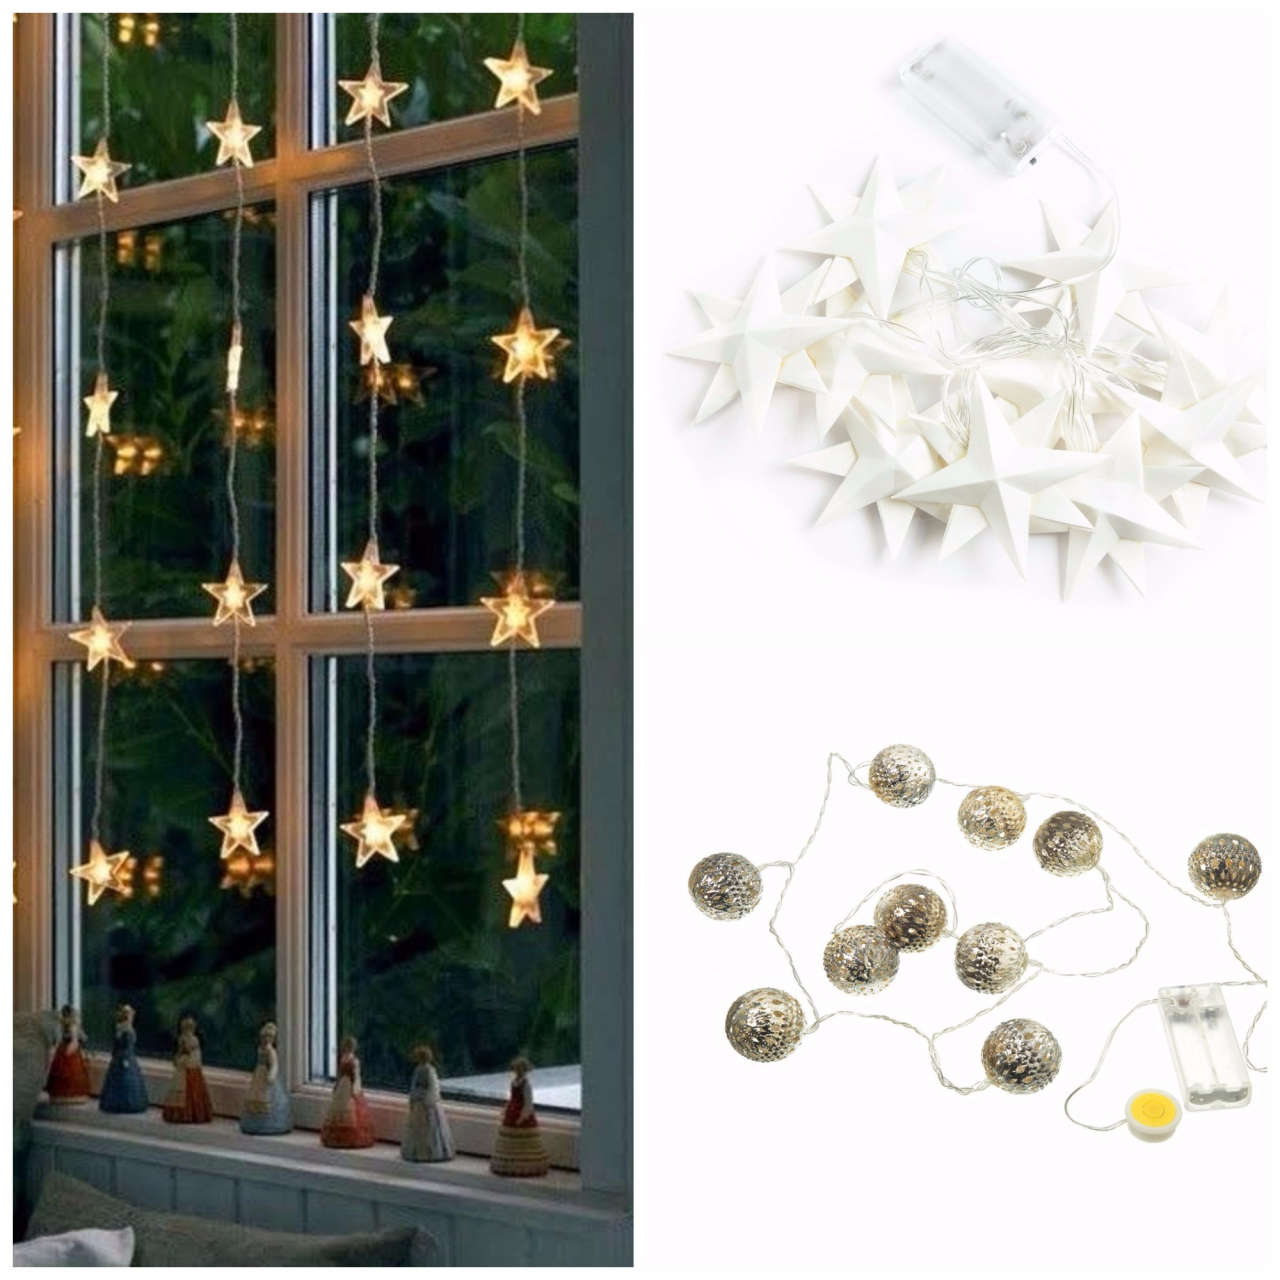 Fora da árvore de Natal, as luzinhas podem iluminar o ambiente e serem colocadas junto das cortinas. A Etna oferece tipos e formatos diferentes de pisca-pisca, como estrelas.